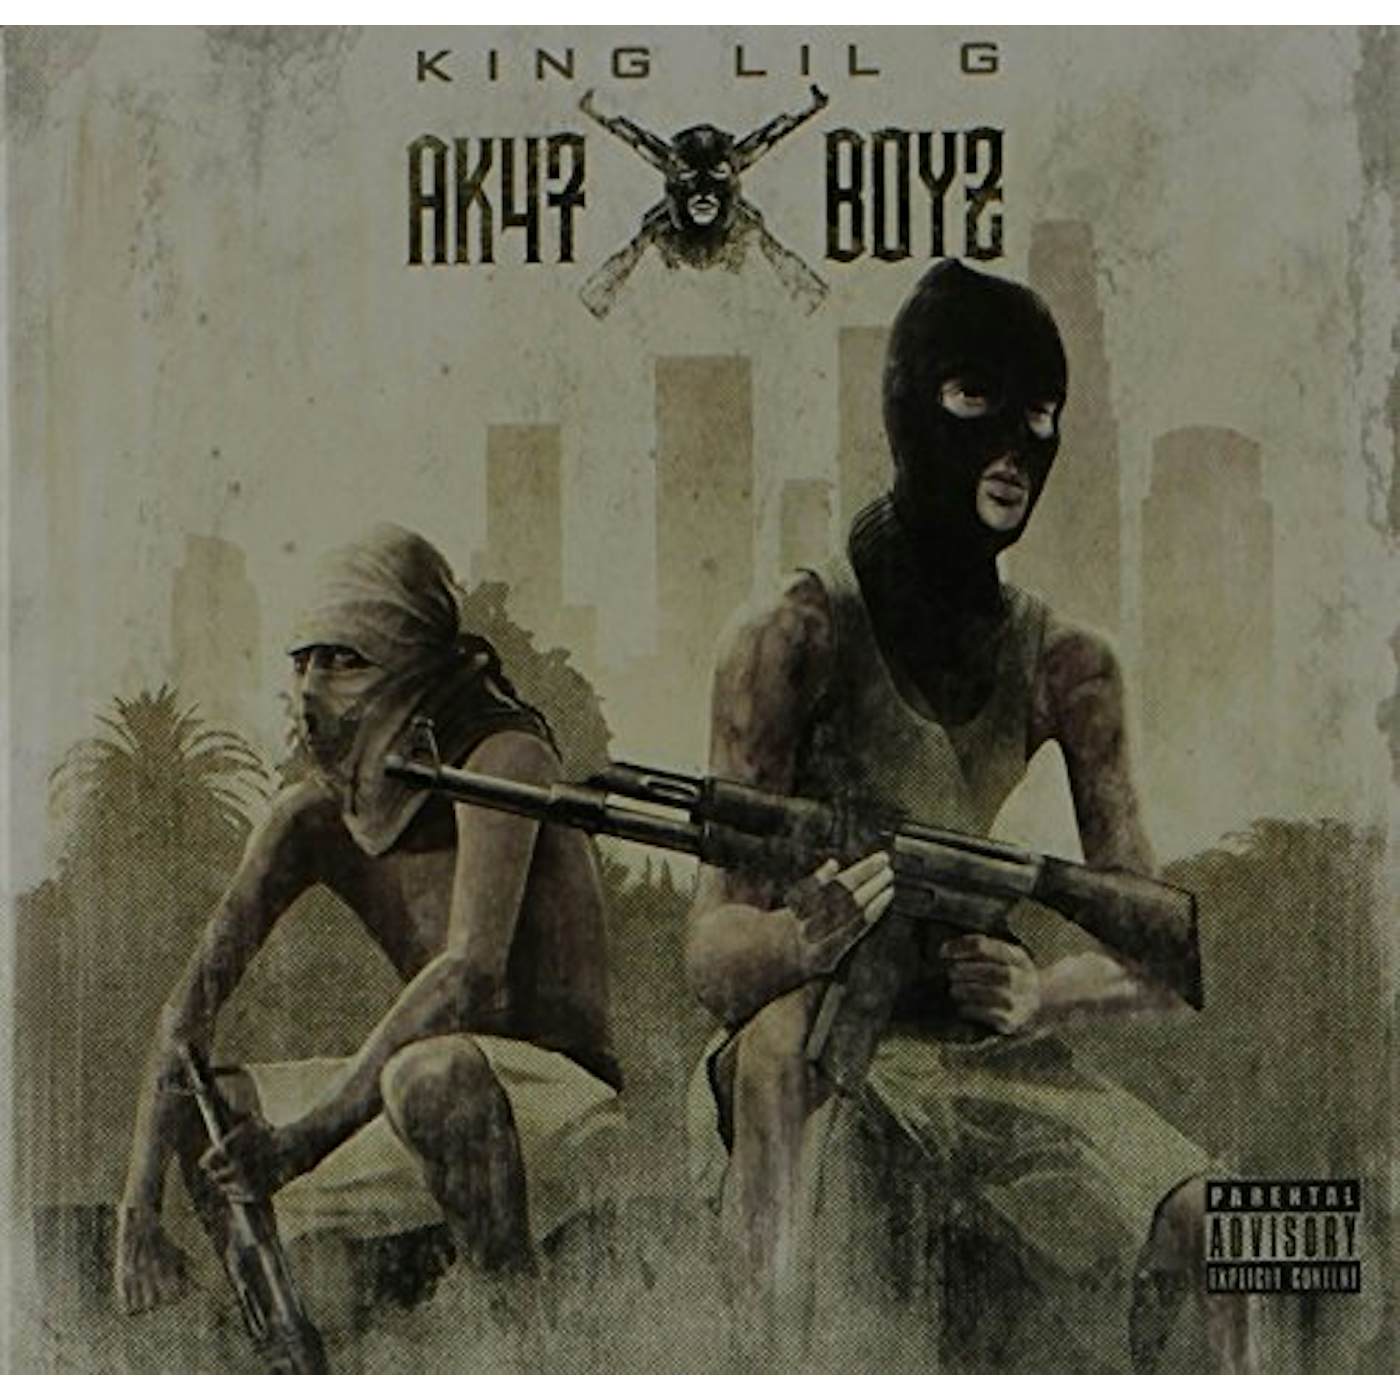 King Lil G AK47 BOYZ CD